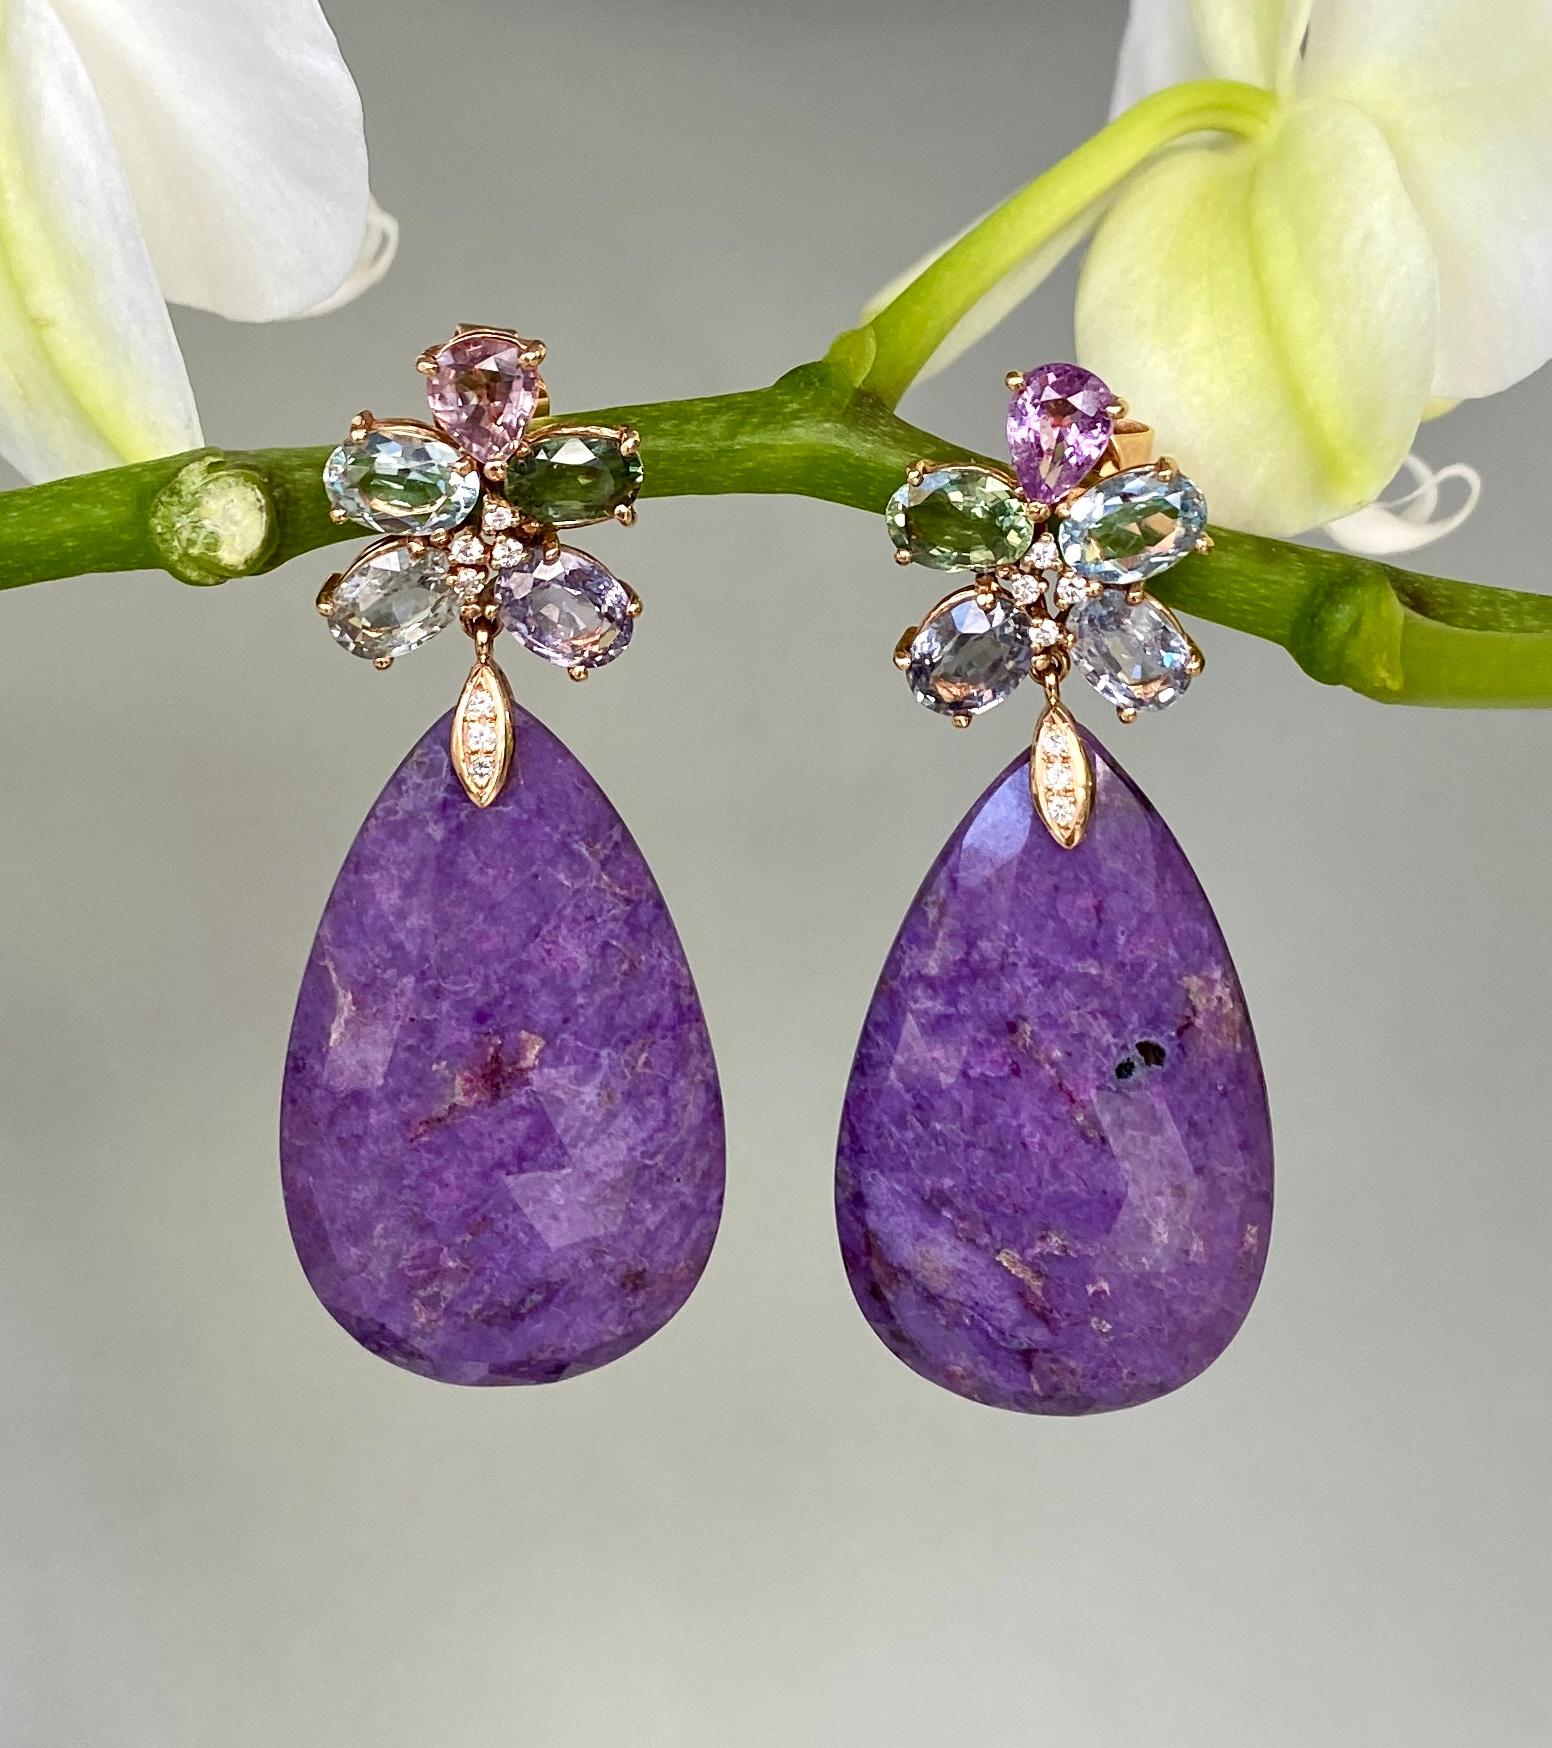 Superbes boucles d'oreilles pendantes composées de fleurs de saphir multicolores, de sugilite violette en forme de poire et de diamants, fabriquées à la main en or rose 18 carats.

Ces boucles d'oreilles uniques en leur genre, composées de saphirs